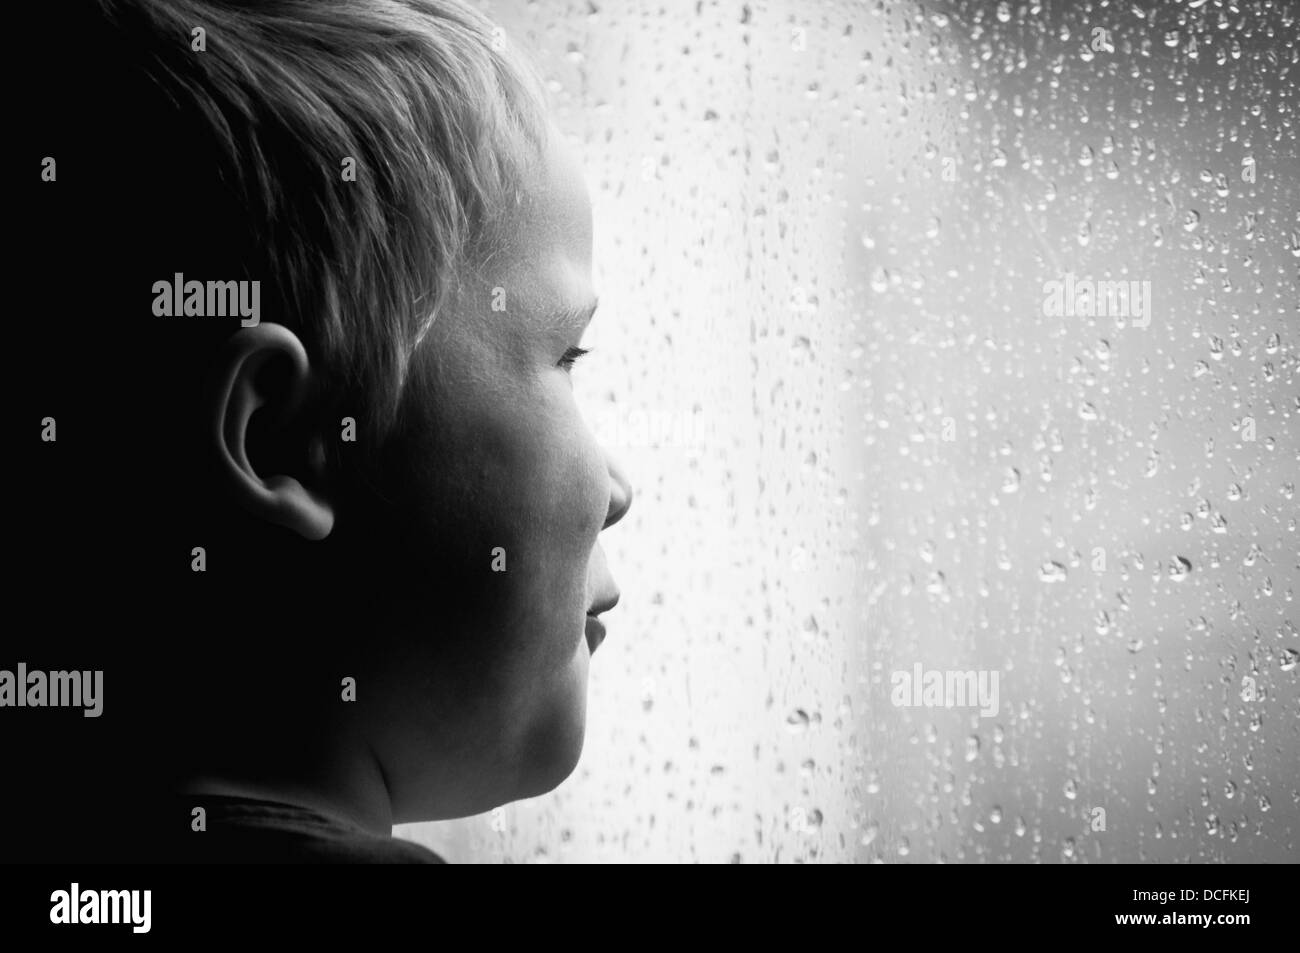 Child watching the rain Stock Photo